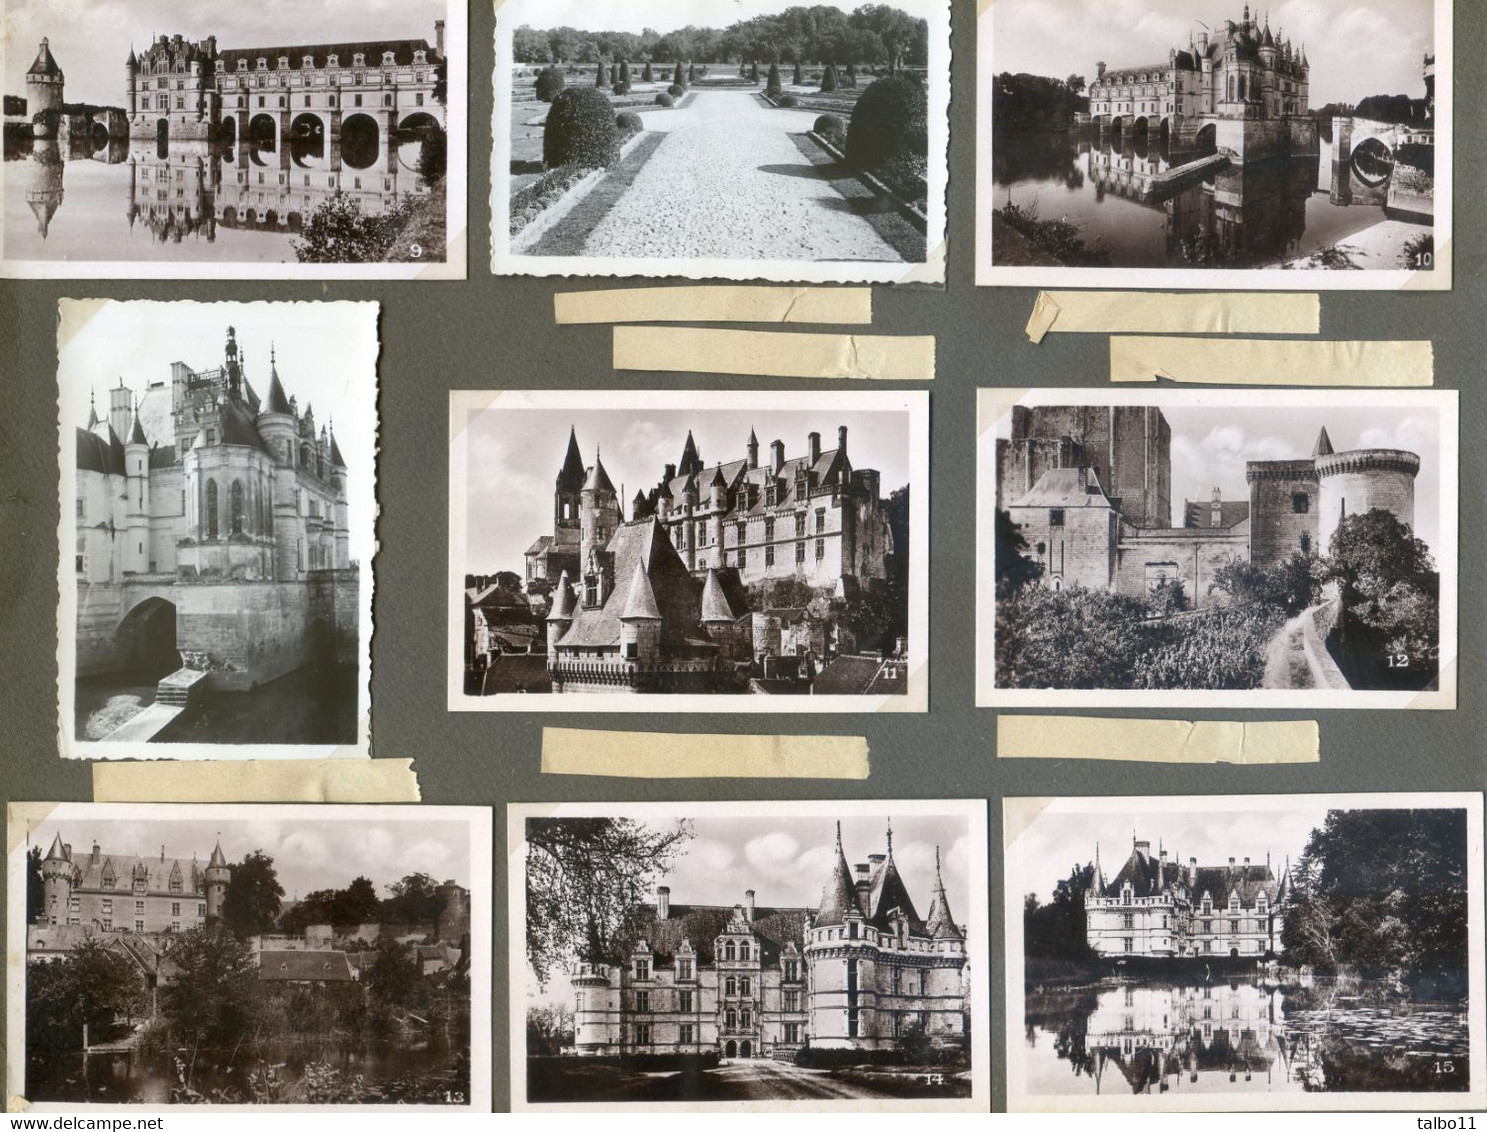 Album mélangeant photos et cartes postales annee 1934 d'un voyage en france Lyon, cote d'Azur, mont st Michel etc